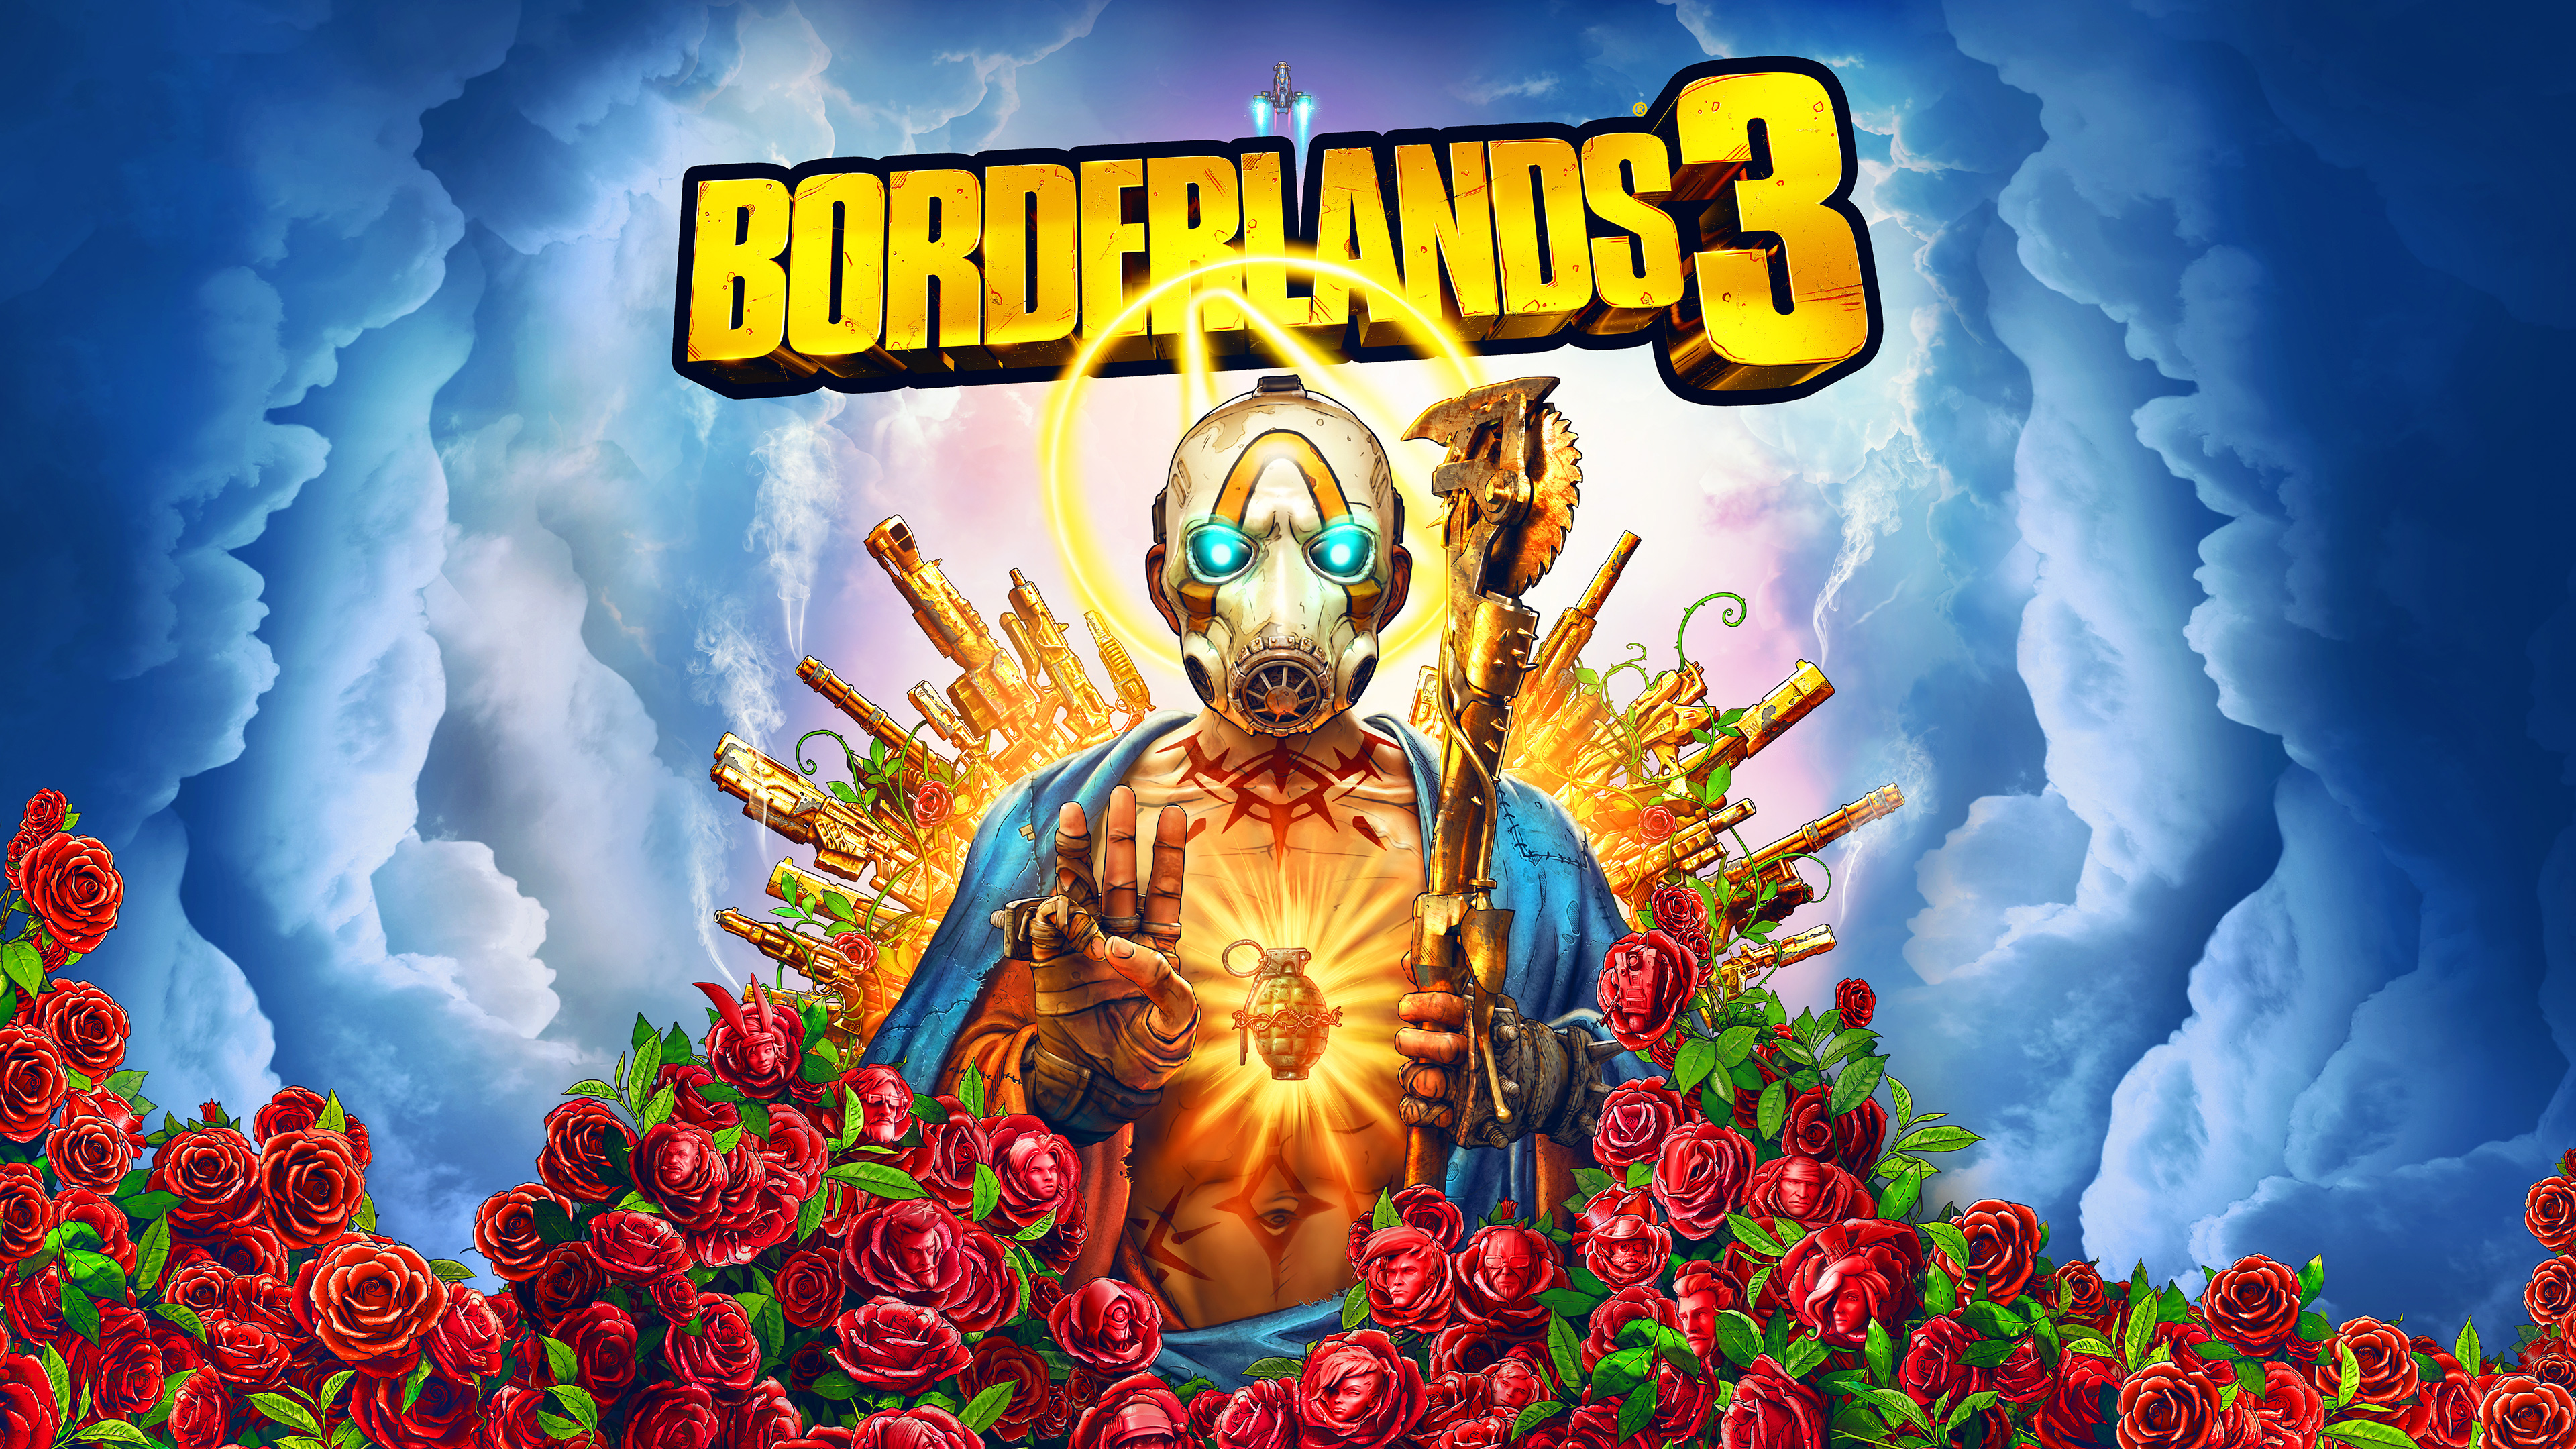 Borderlands 3 releases on September 13 for PlayStation 4 